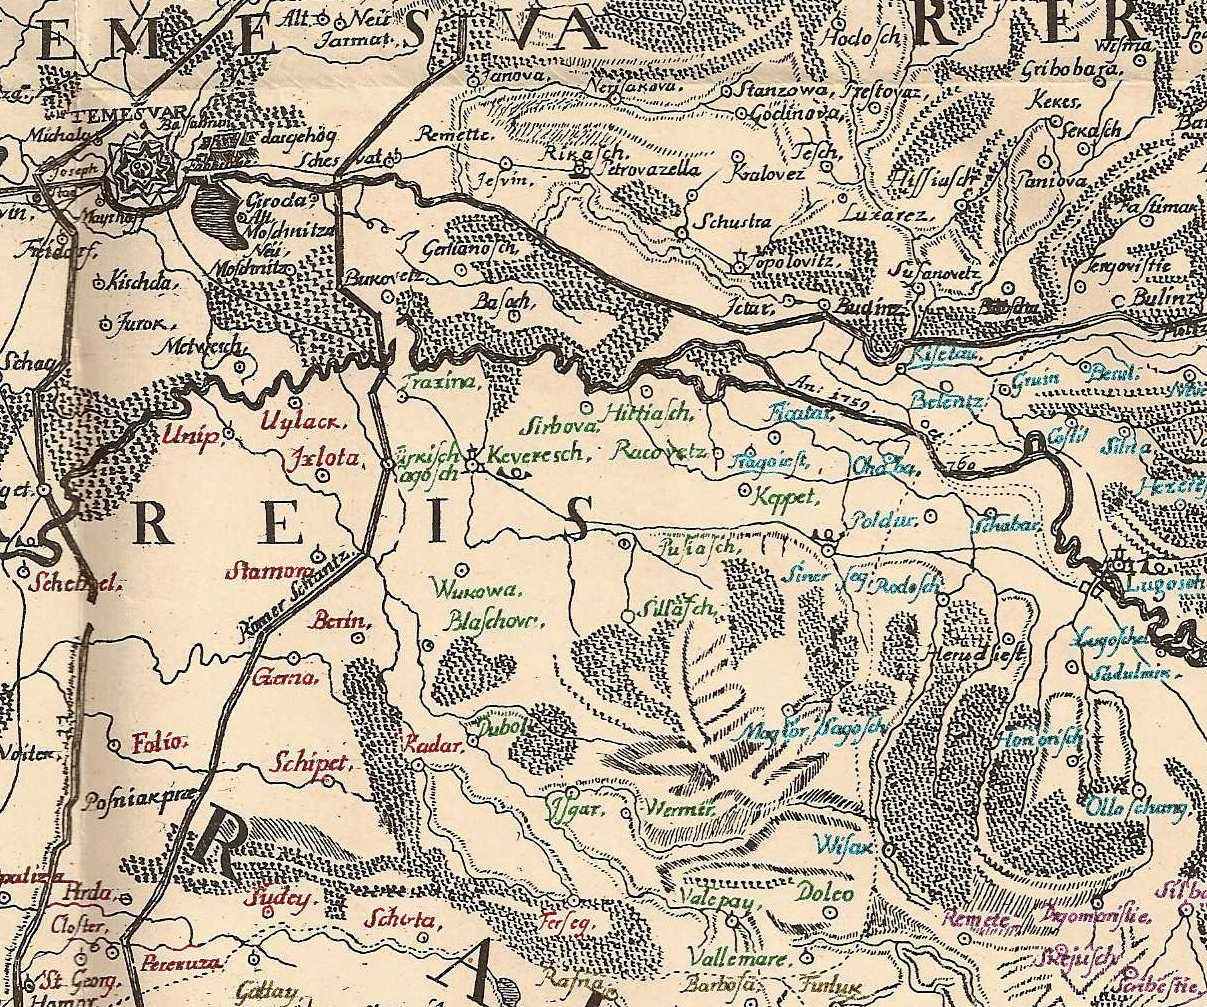 Fragment din harta Banatului insotind lucrarea lui Griselini Istoria Banatului Timisan, ediţia Nicolae Bolocan, Bucuresti, 1926